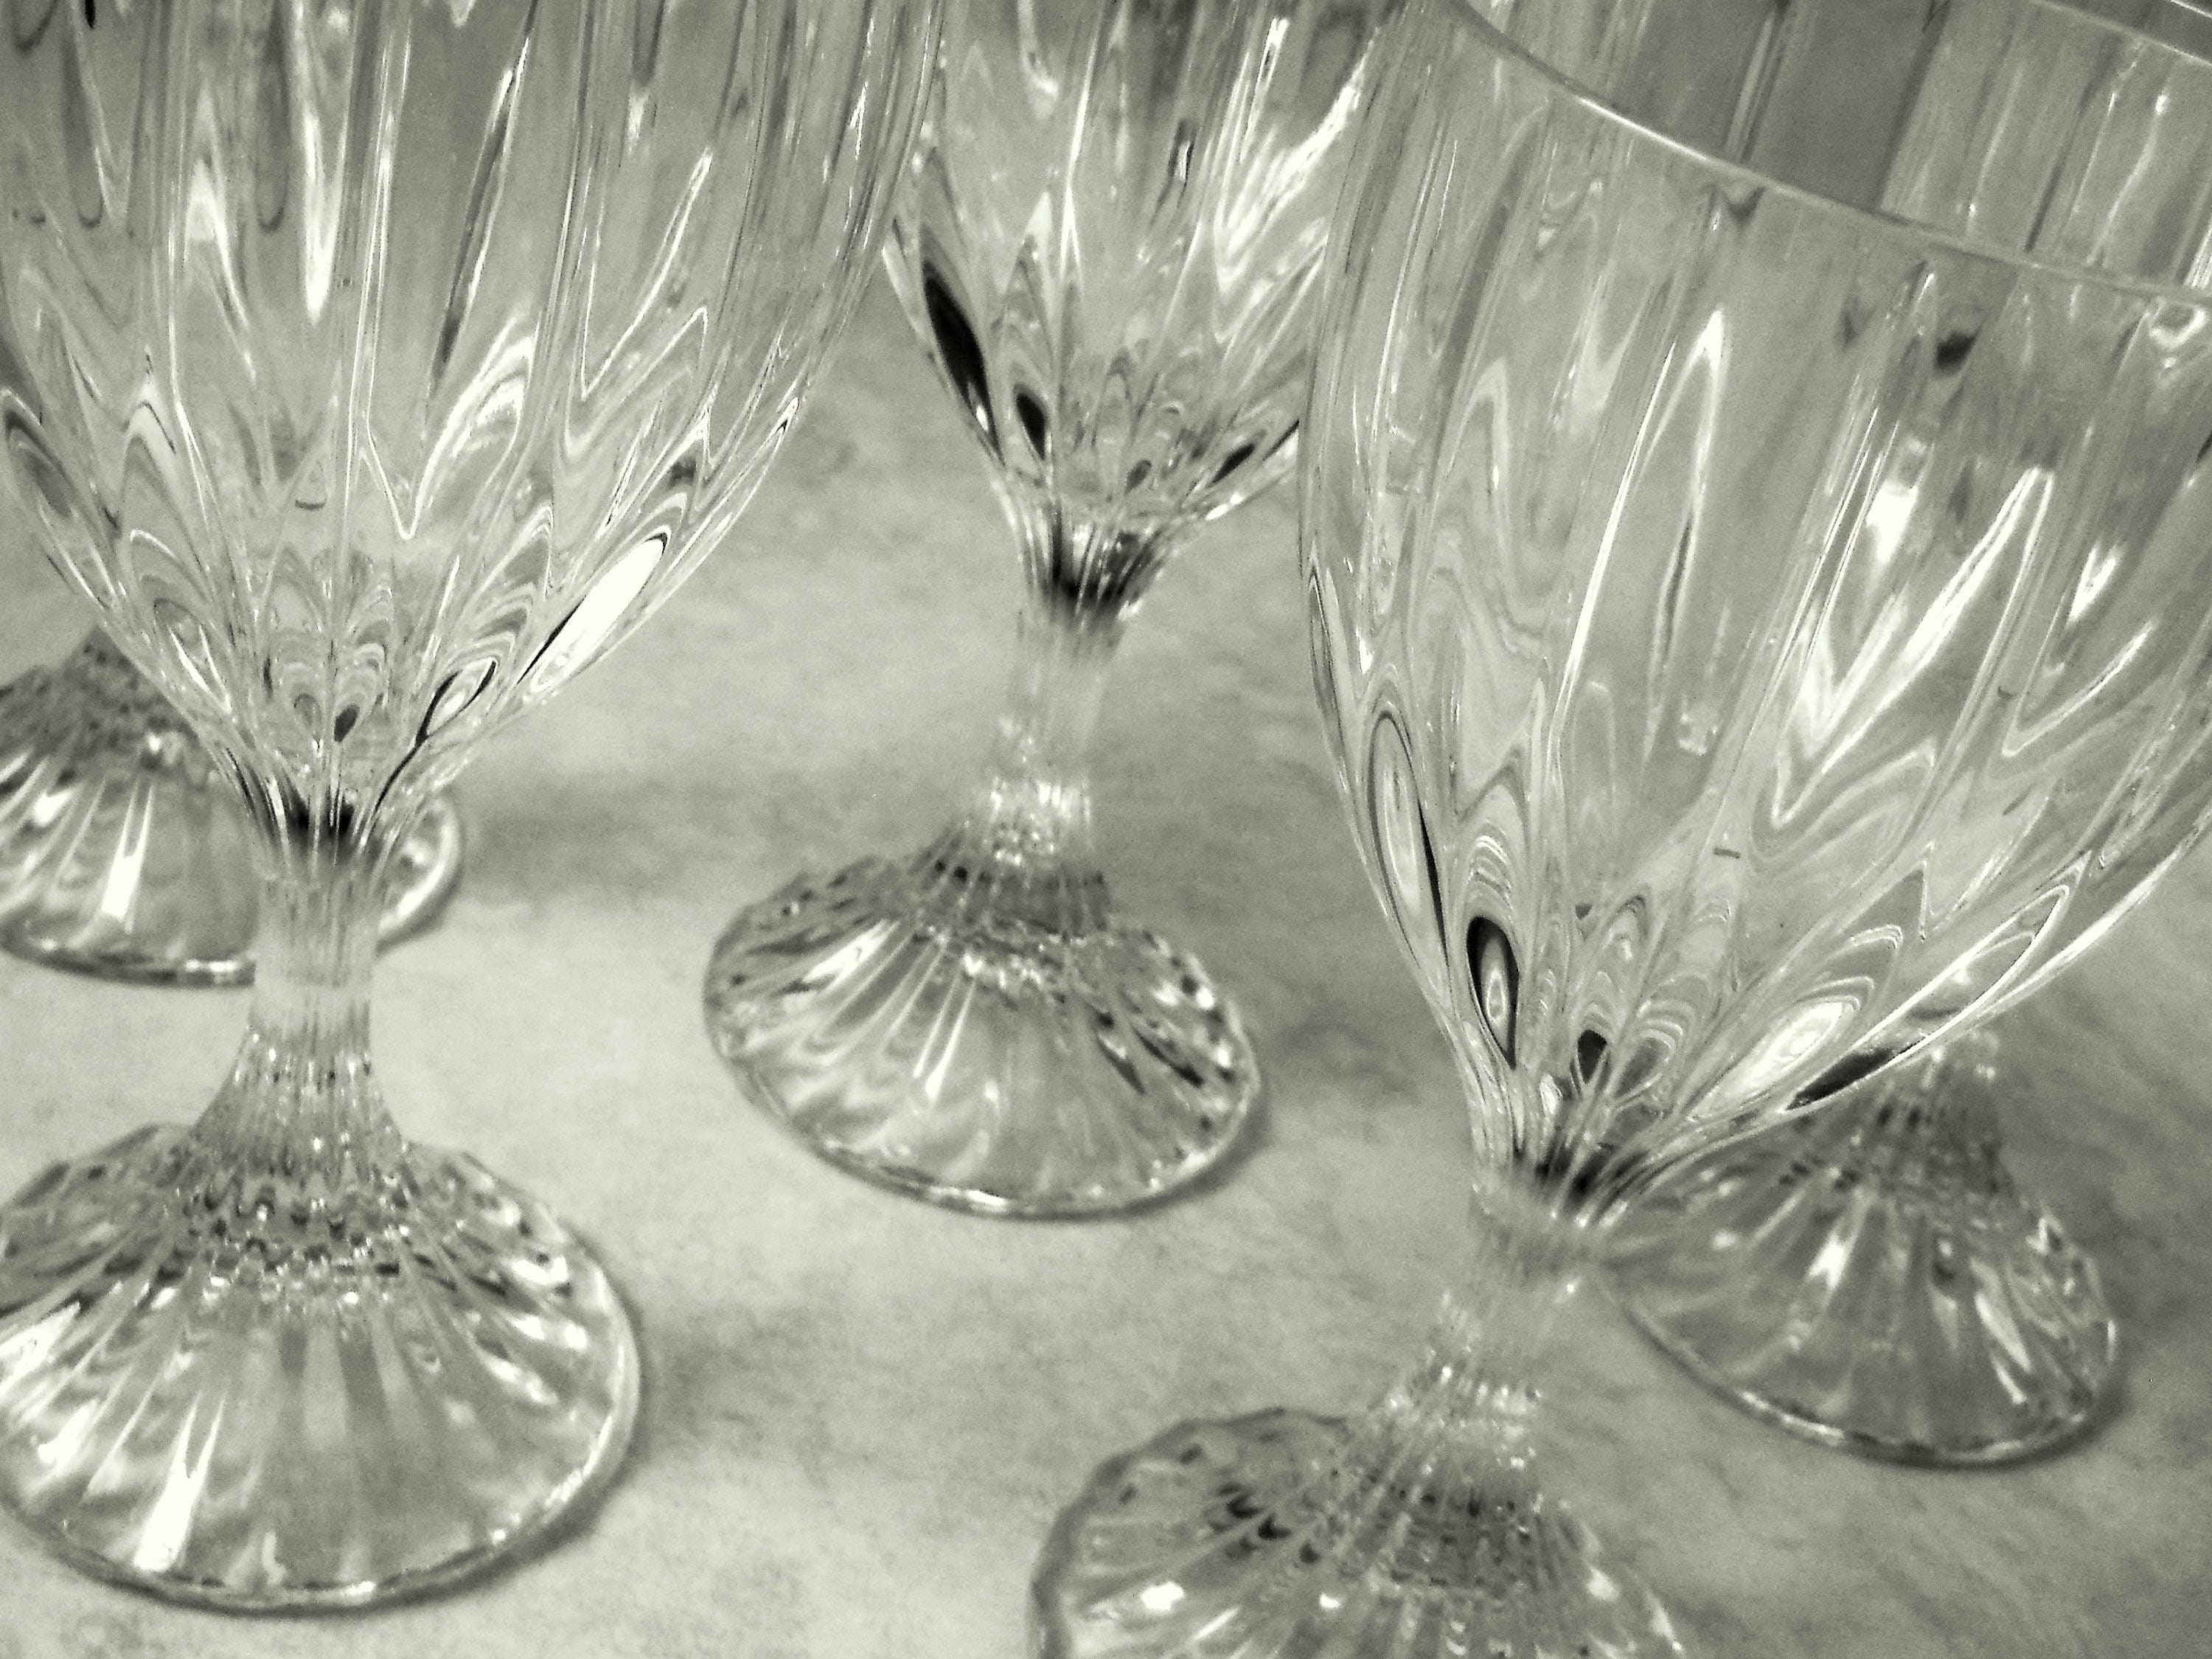 Mikasa Park Lane Water Glasses / Water Glasses / Crystal Glasses / Elegant  Glasses / Mikasa Blown Glass / Elegant Stemware / Drinkware Pair 